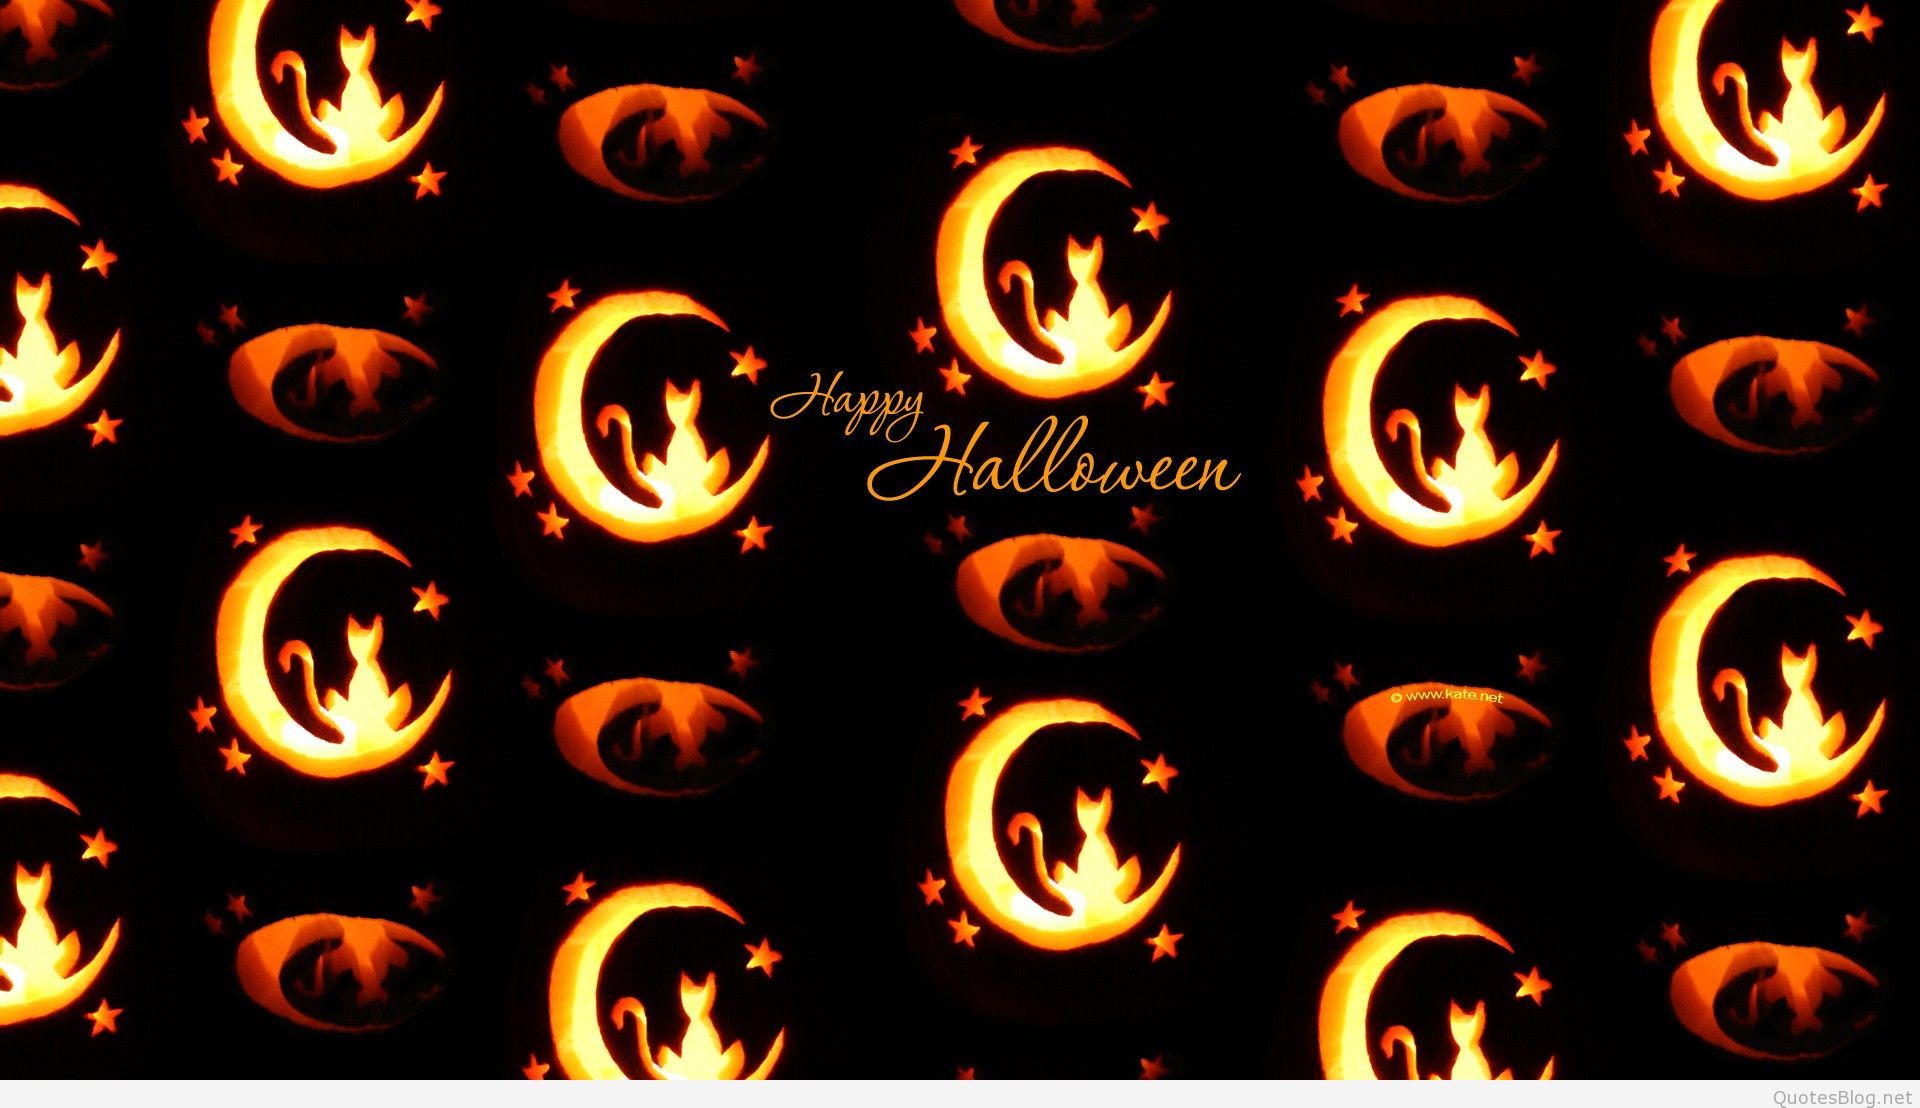 Best Of Happy Halloween Wallpaper - Halloween Desktop Backgrounds - HD Wallpaper 